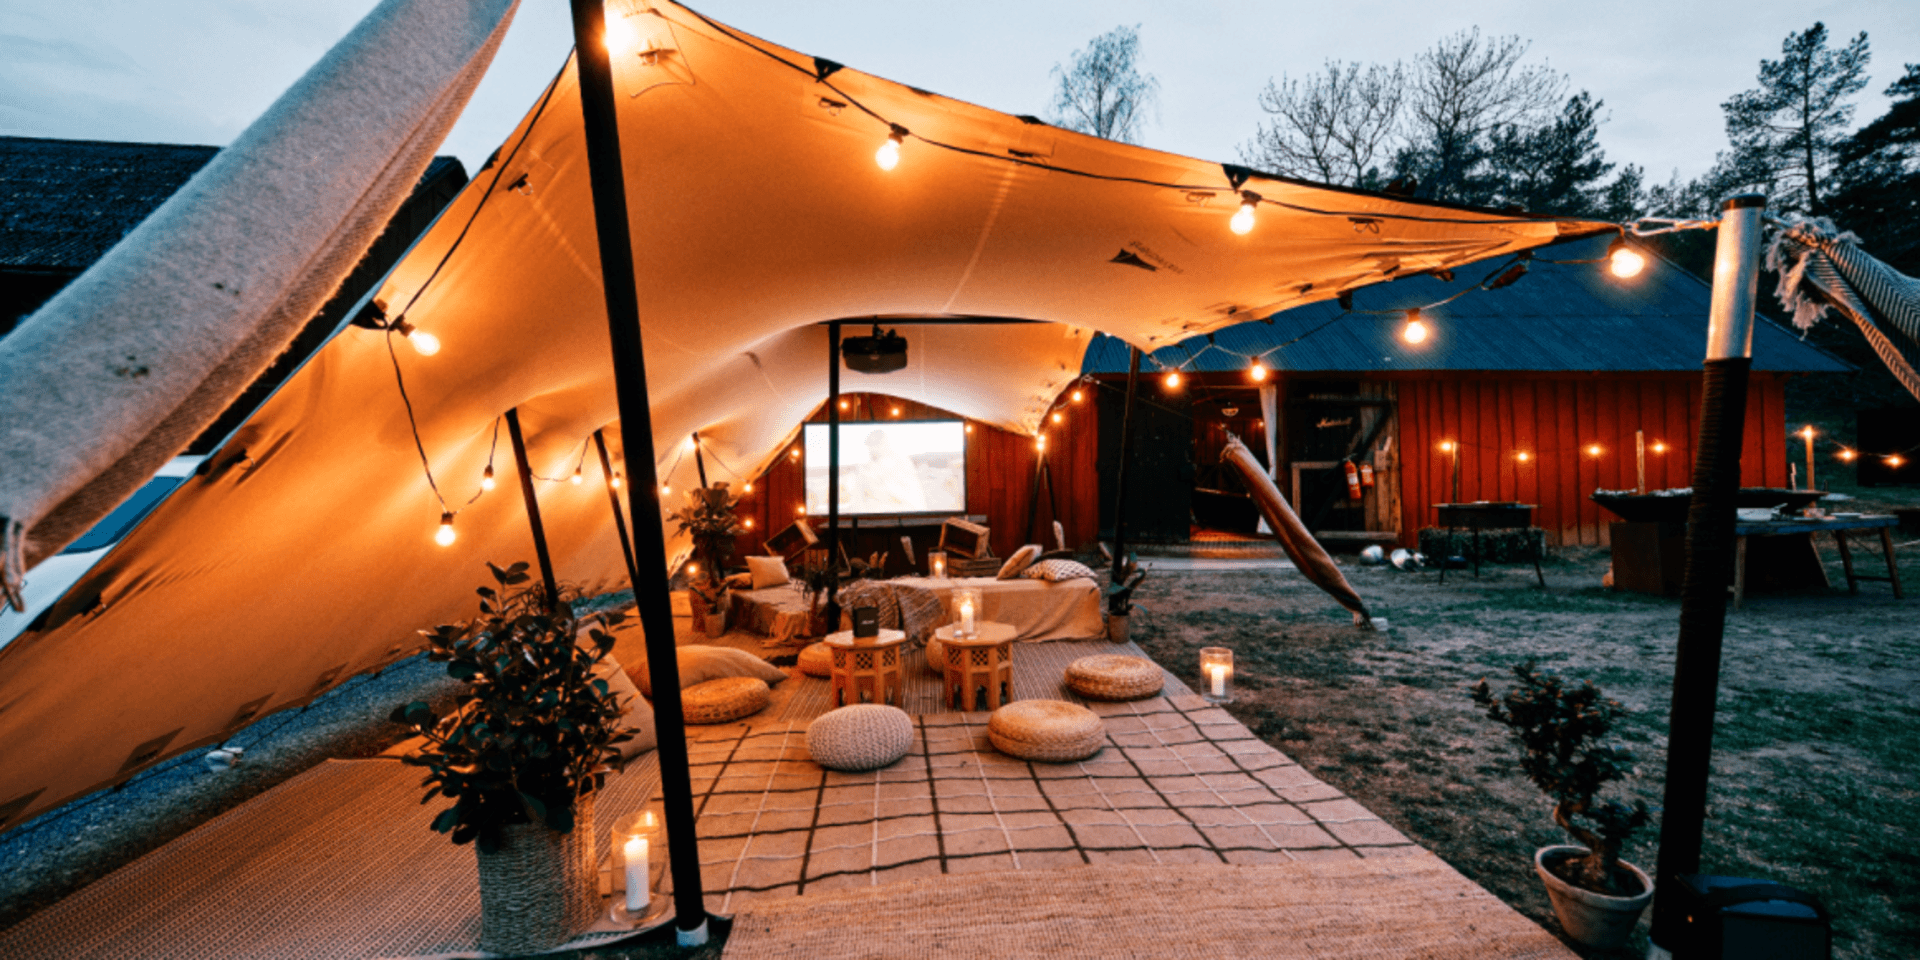 Halmstadparet jobbar även med en annan sorts tält genom företaget Nordic Stretch Tents som hyr ut och säljer olika former av väderskydd. 